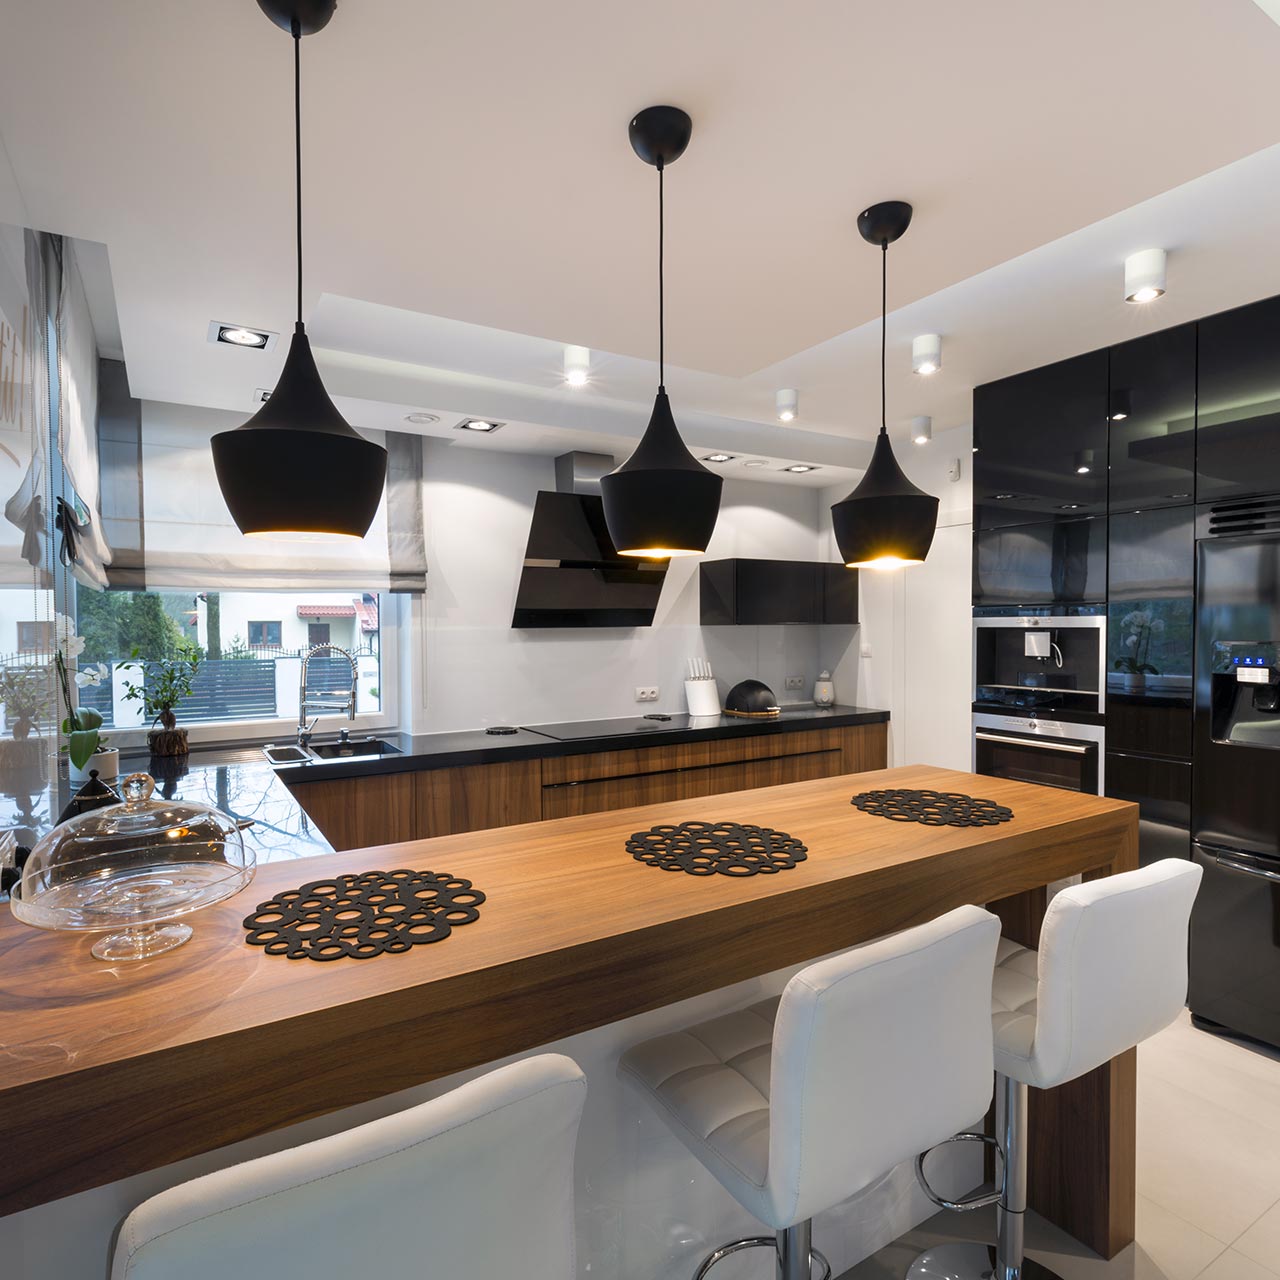 European modular kitchen design gives international kitchen look